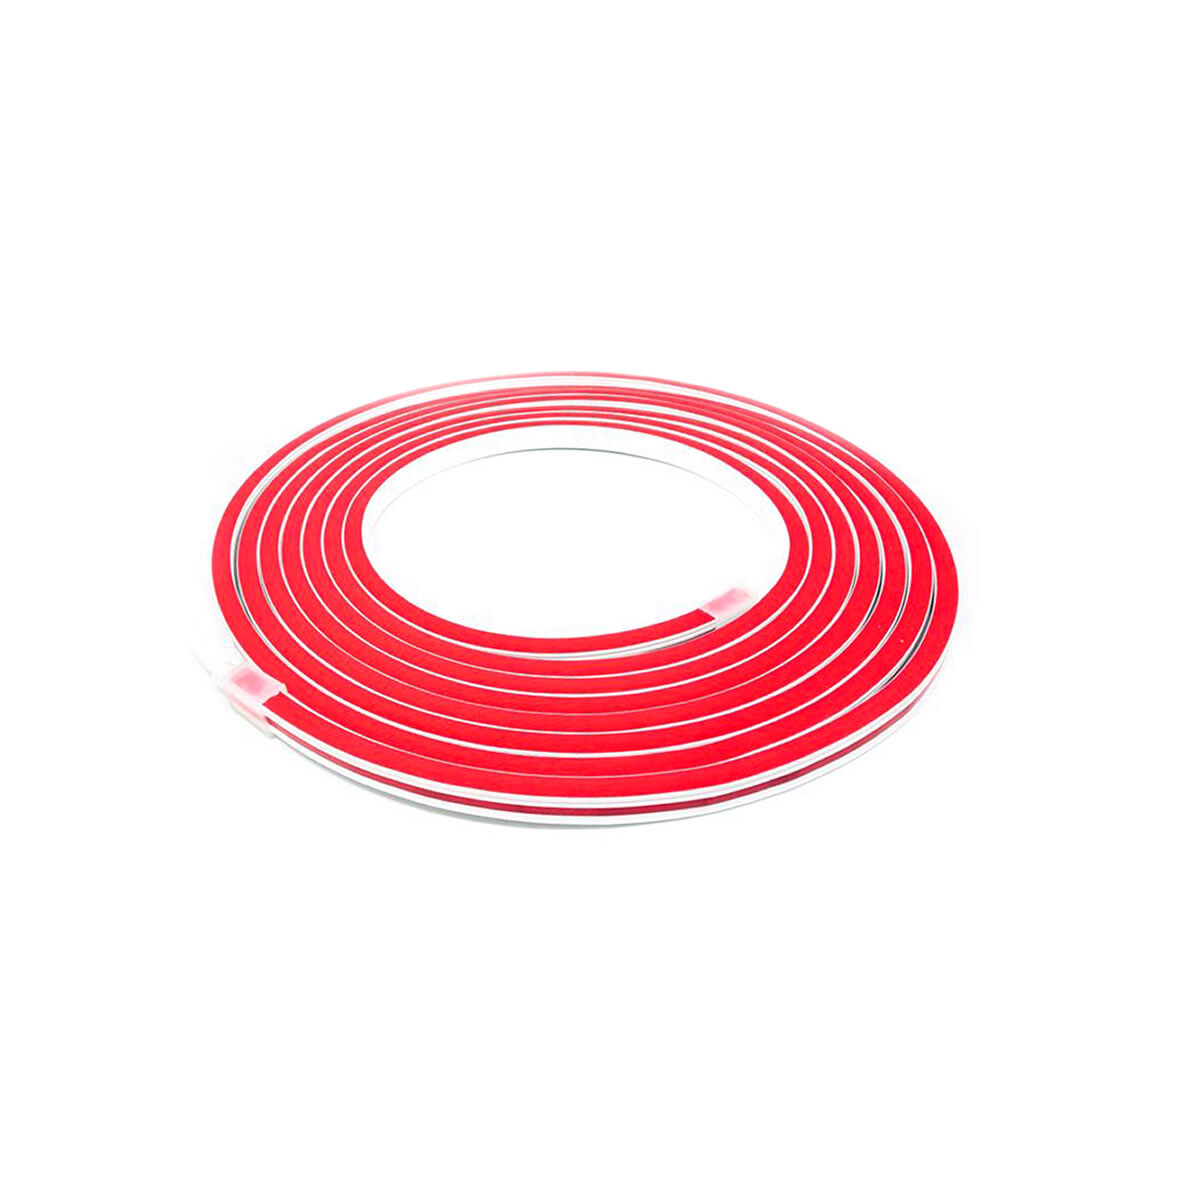 Tira Neon LED Flexible Impermeable De Gran Luminosidad - Rojo 